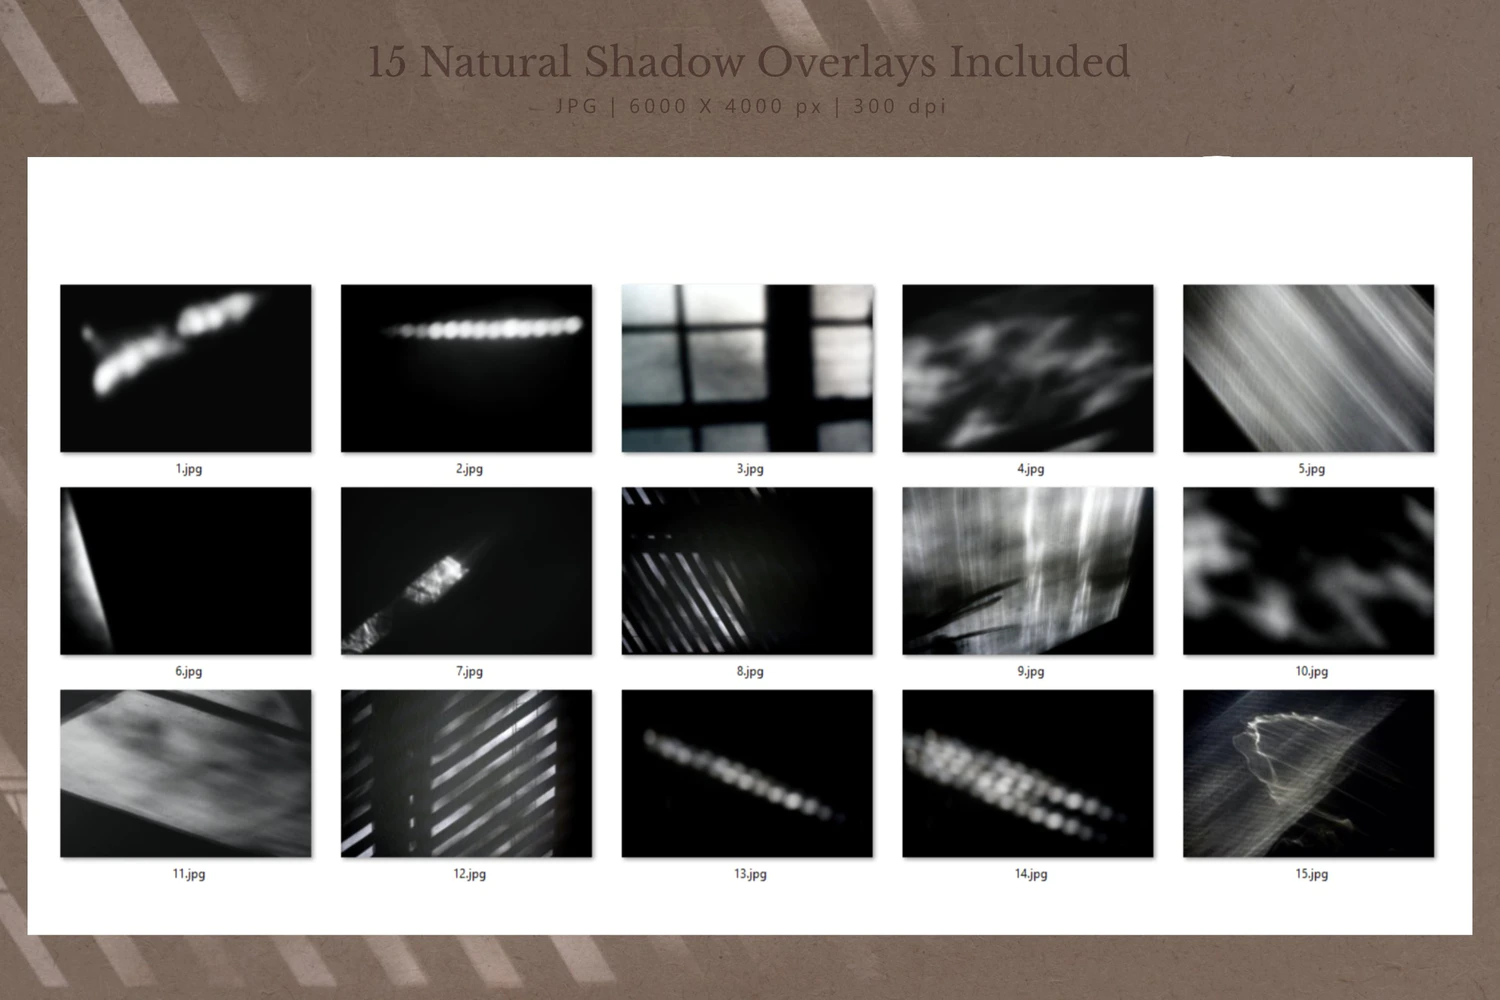 3986 真实文艺自然阳光窗格植物光晕阴影光影背景底纹投影图片设计素材 Natural-Shadow-Overlays-Background@GOOODME.COM